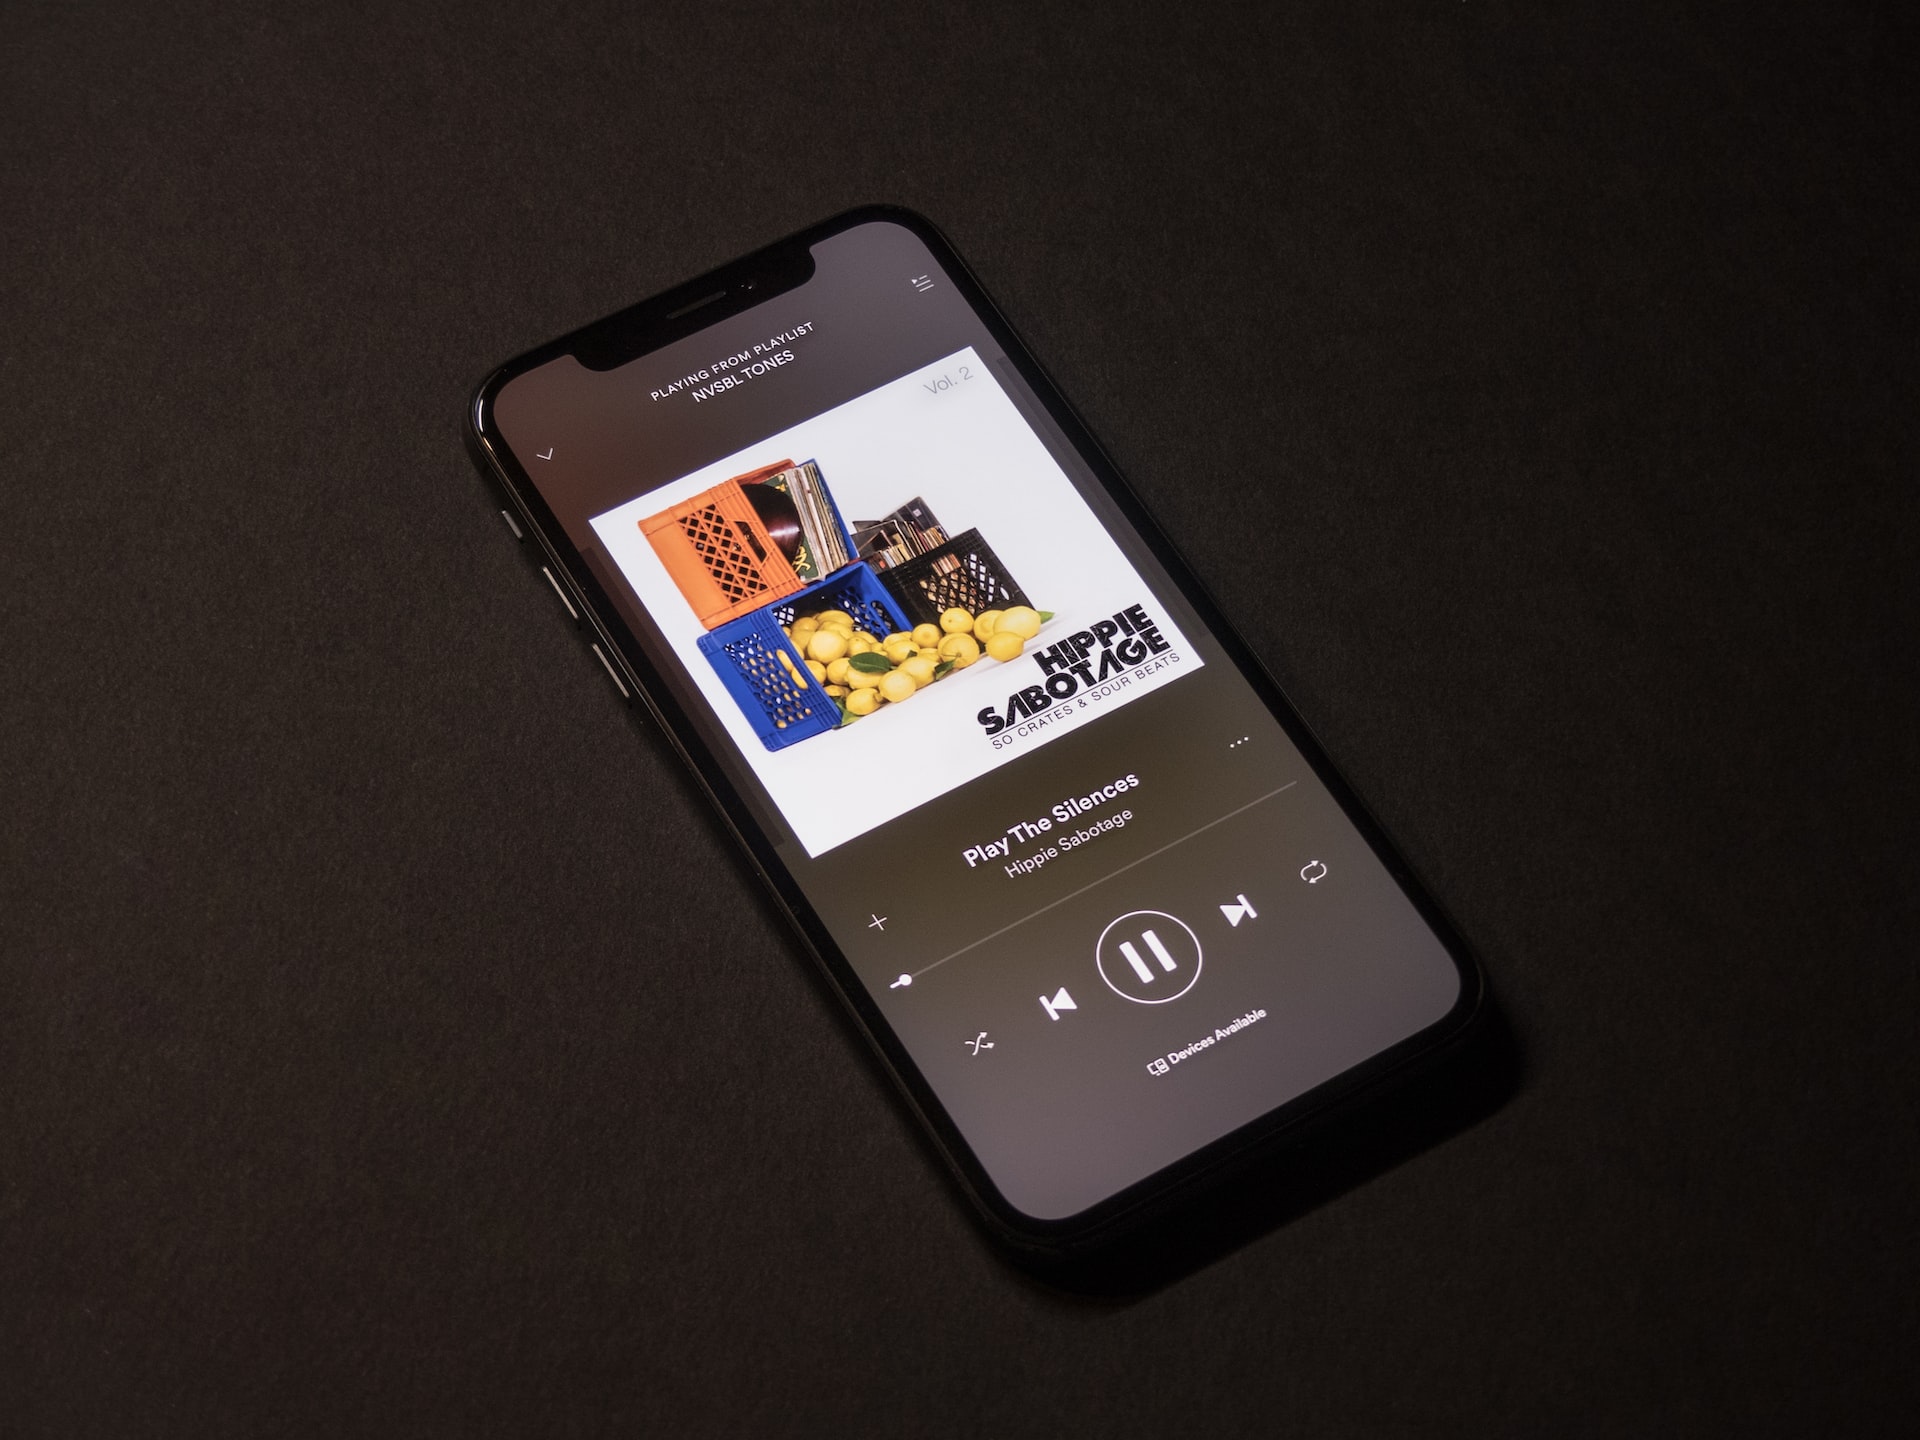 iOS : Spotify annonce l'arrivée d'un système de paiement in-app pour les possesseurs d'iPhone européens